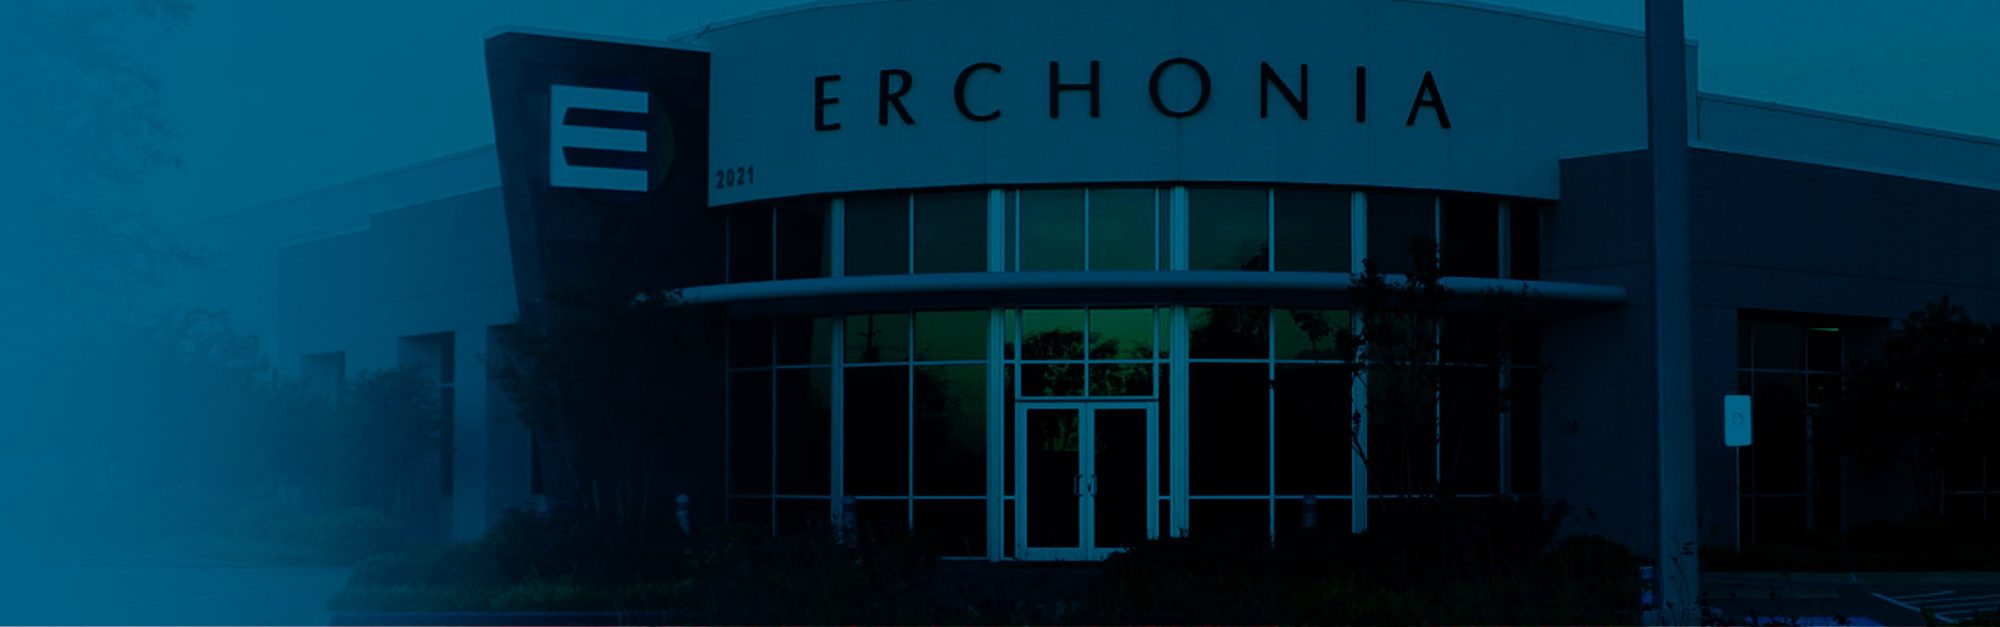 Erchonia